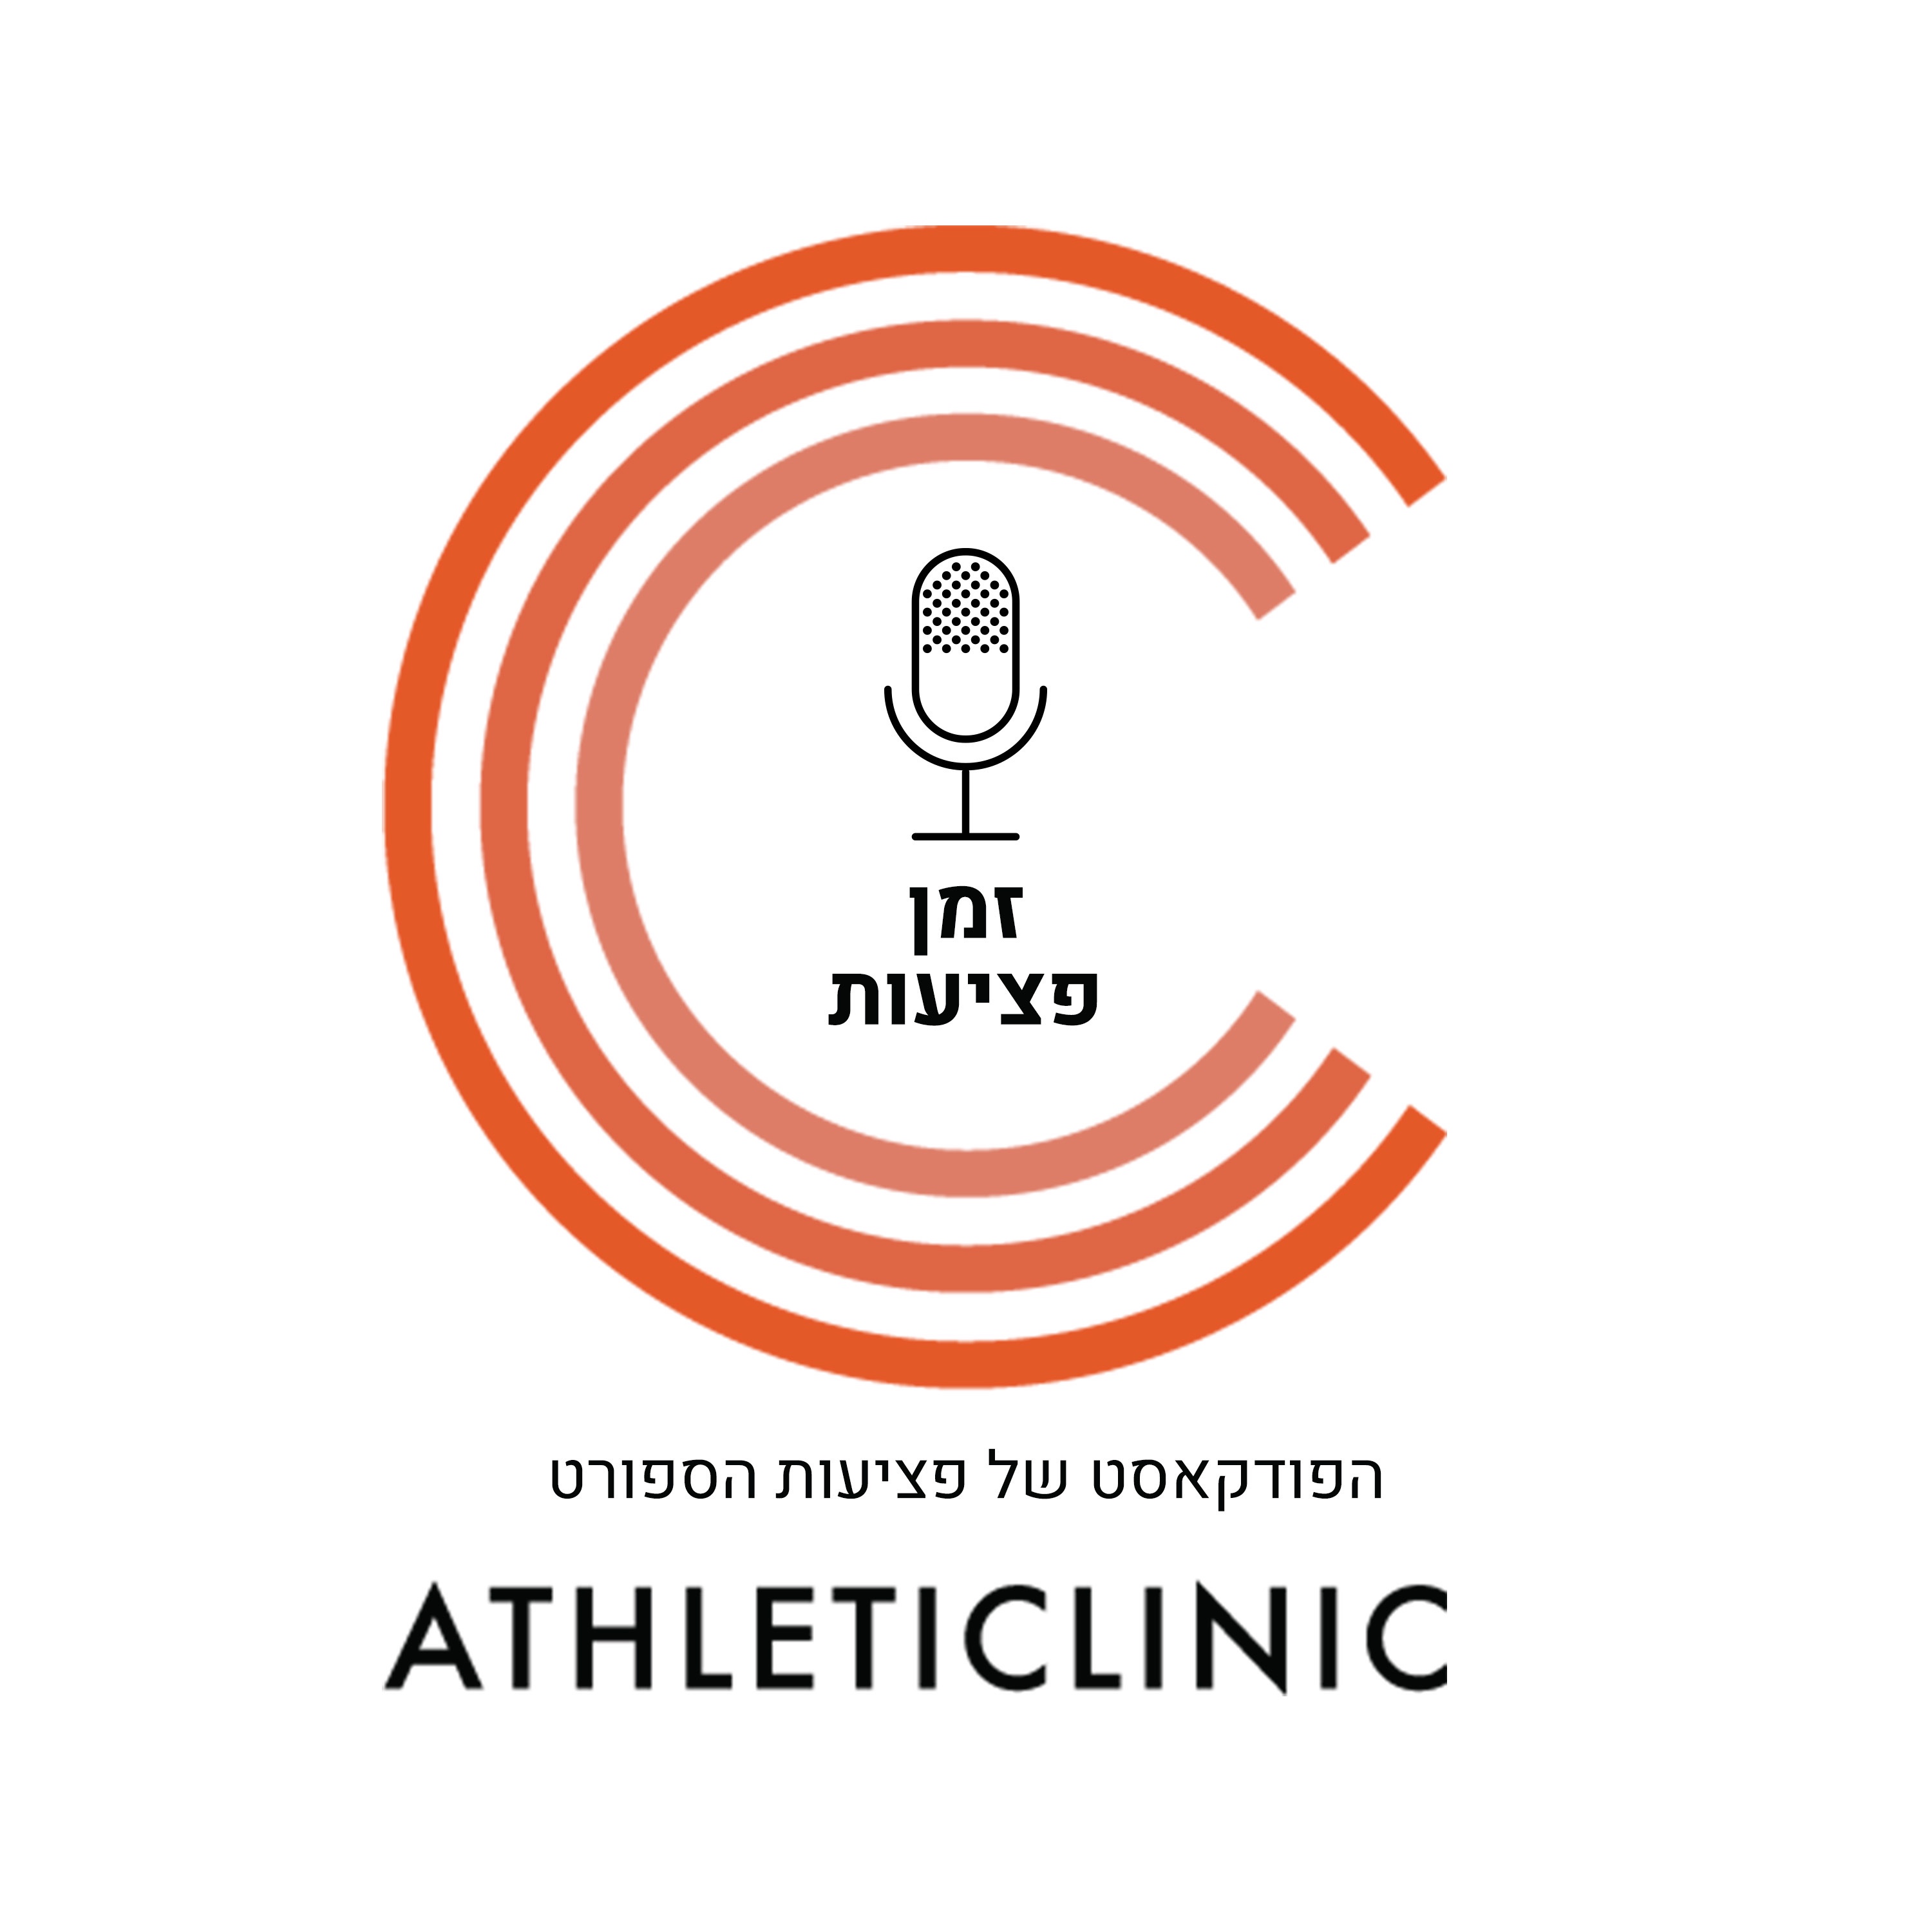 זמן פציעות - פודקאסט בנושא רפואת ספורט ושיפור ביצועים אתלטיים מבית אתלטיק קליניק